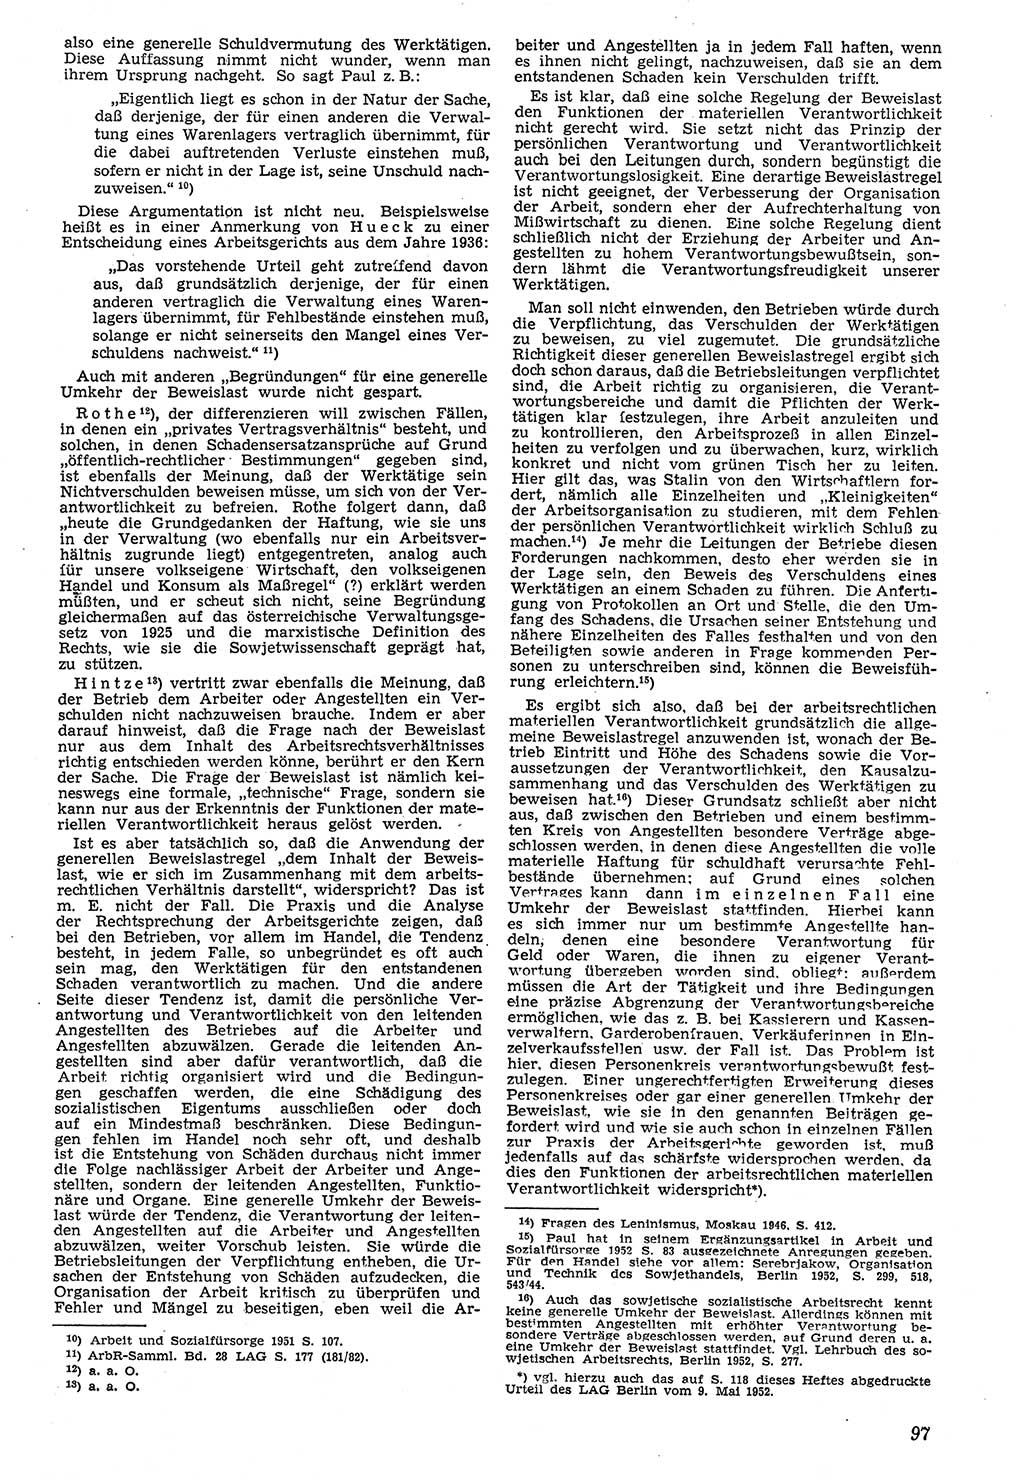 Neue Justiz (NJ), Zeitschrift für Recht und Rechtswissenschaft [Deutsche Demokratische Republik (DDR)], 7. Jahrgang 1953, Seite 97 (NJ DDR 1953, S. 97)